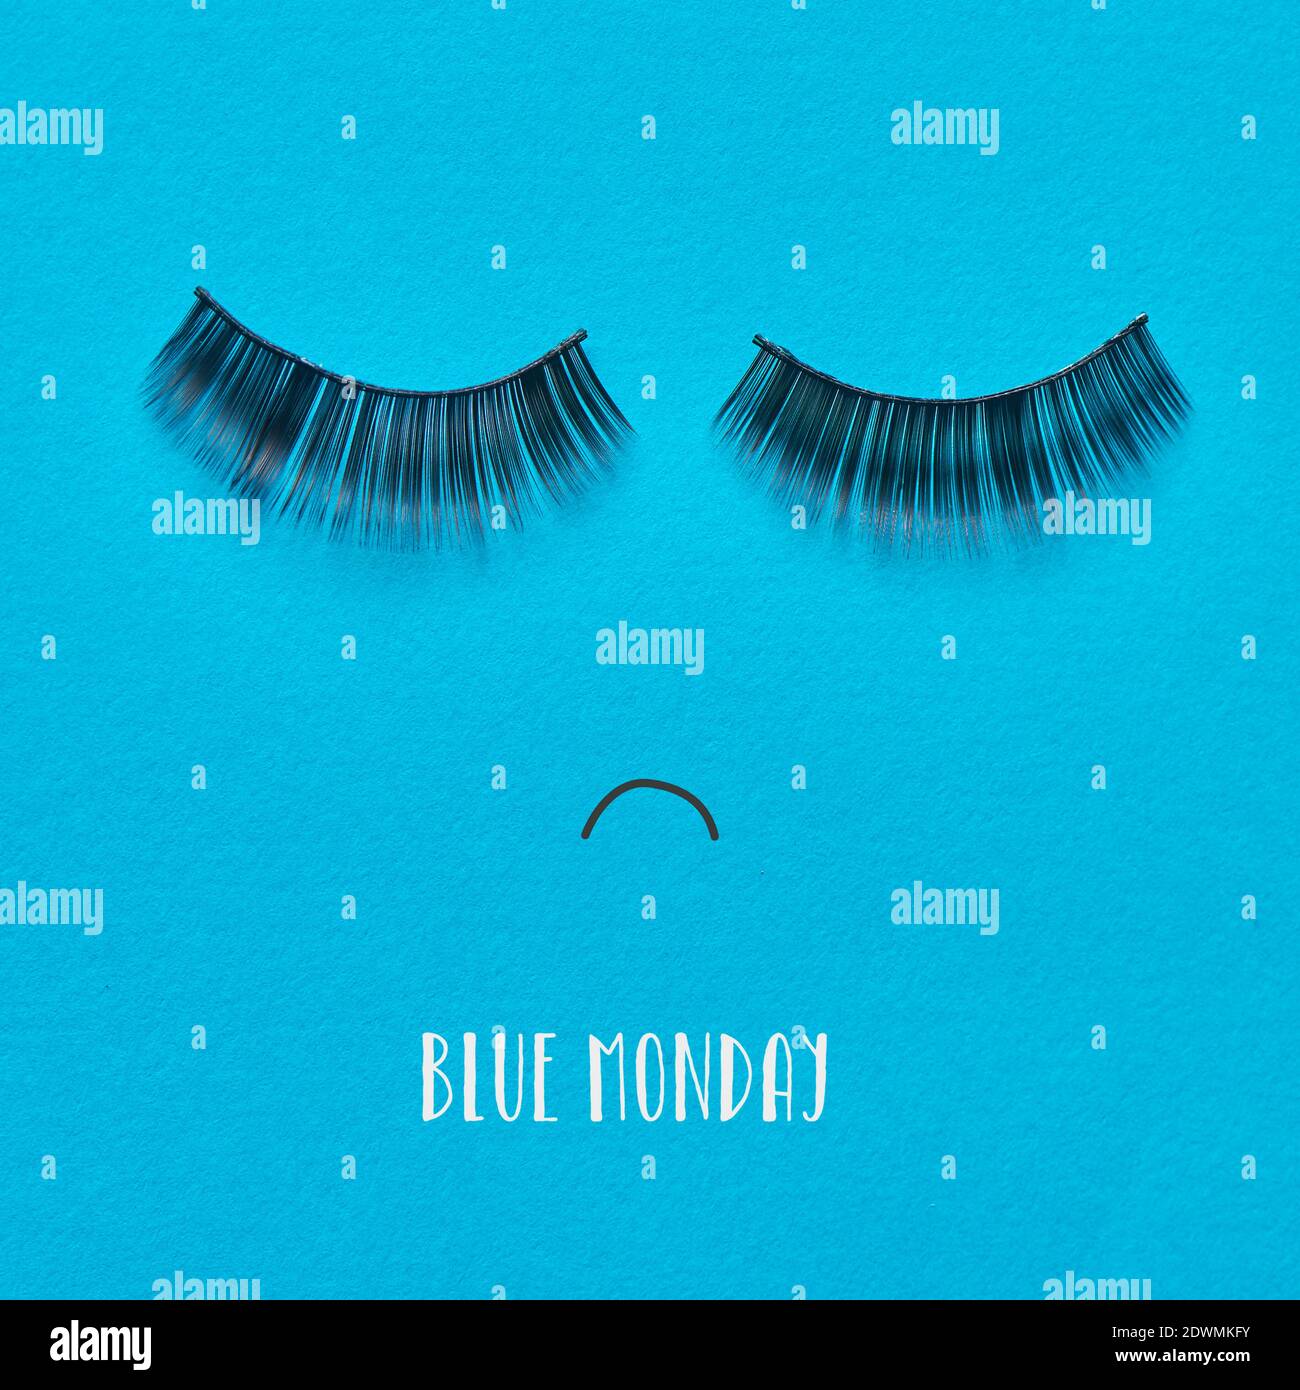 Der Text blau montag und ein Paar gefälschte Wimpern Und ein Mund auf einem blauen Hintergrund gezeichnet bilden ein Trauriges Gesicht Stockfoto